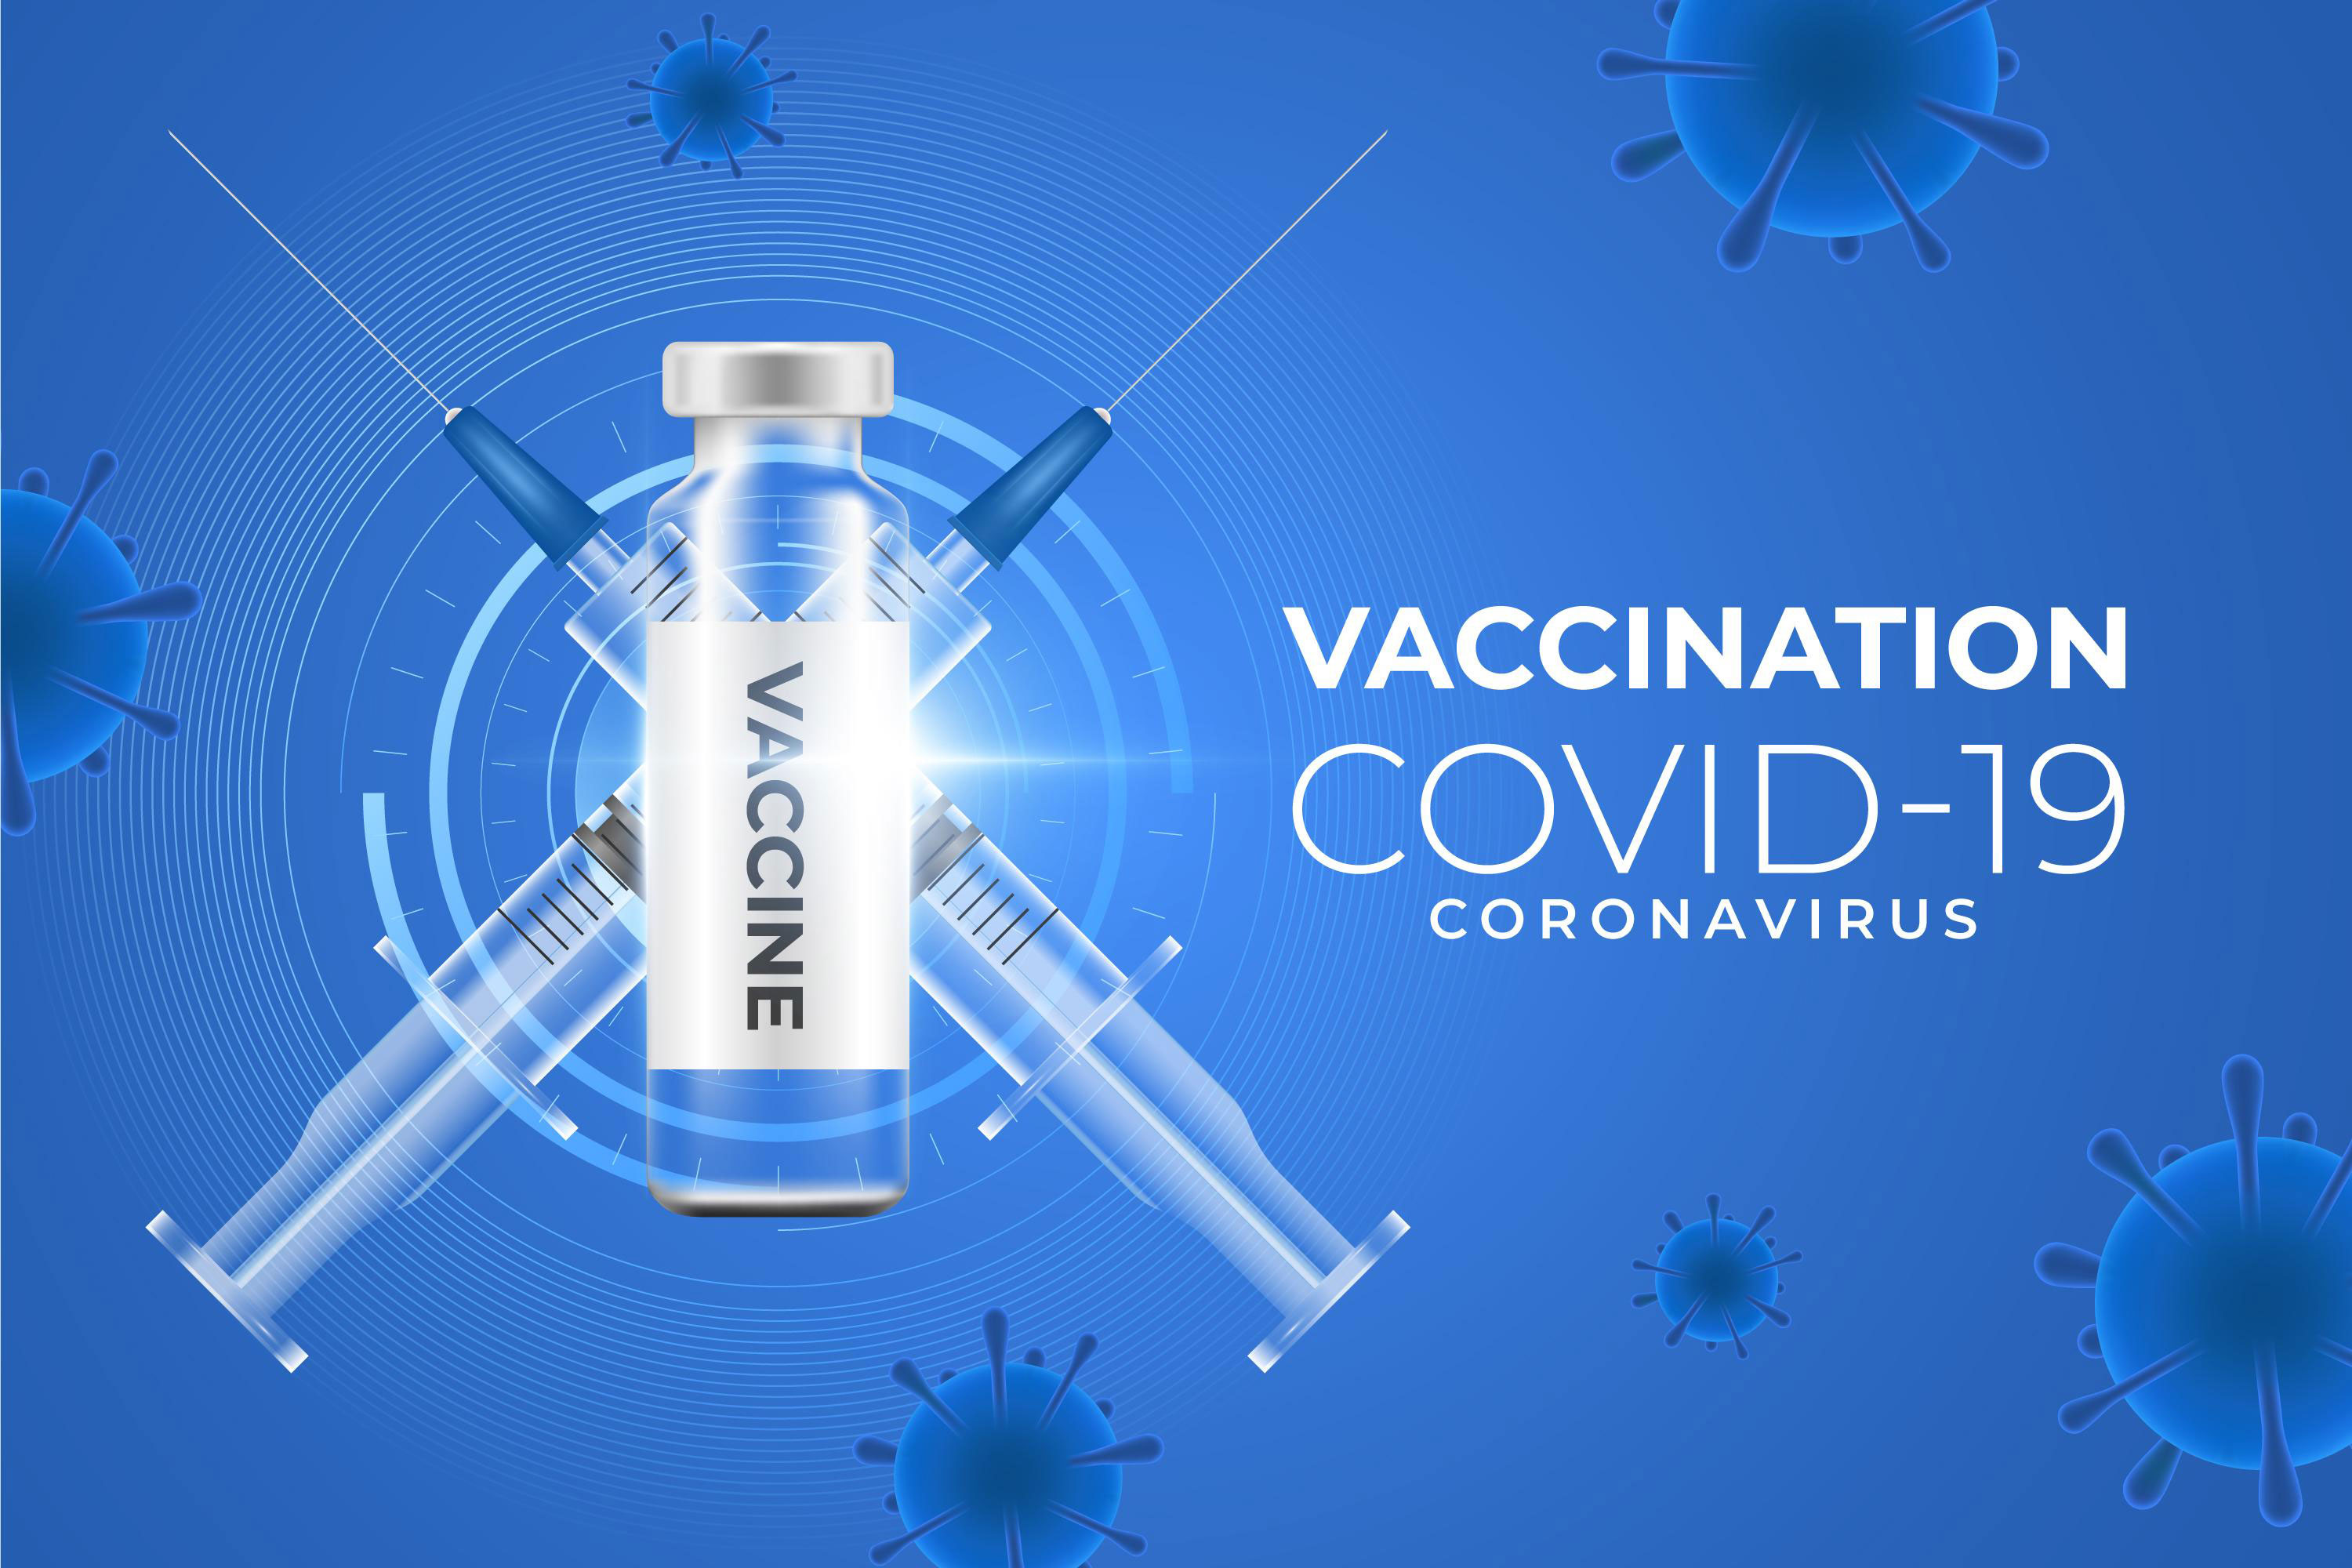  Covid vaccination